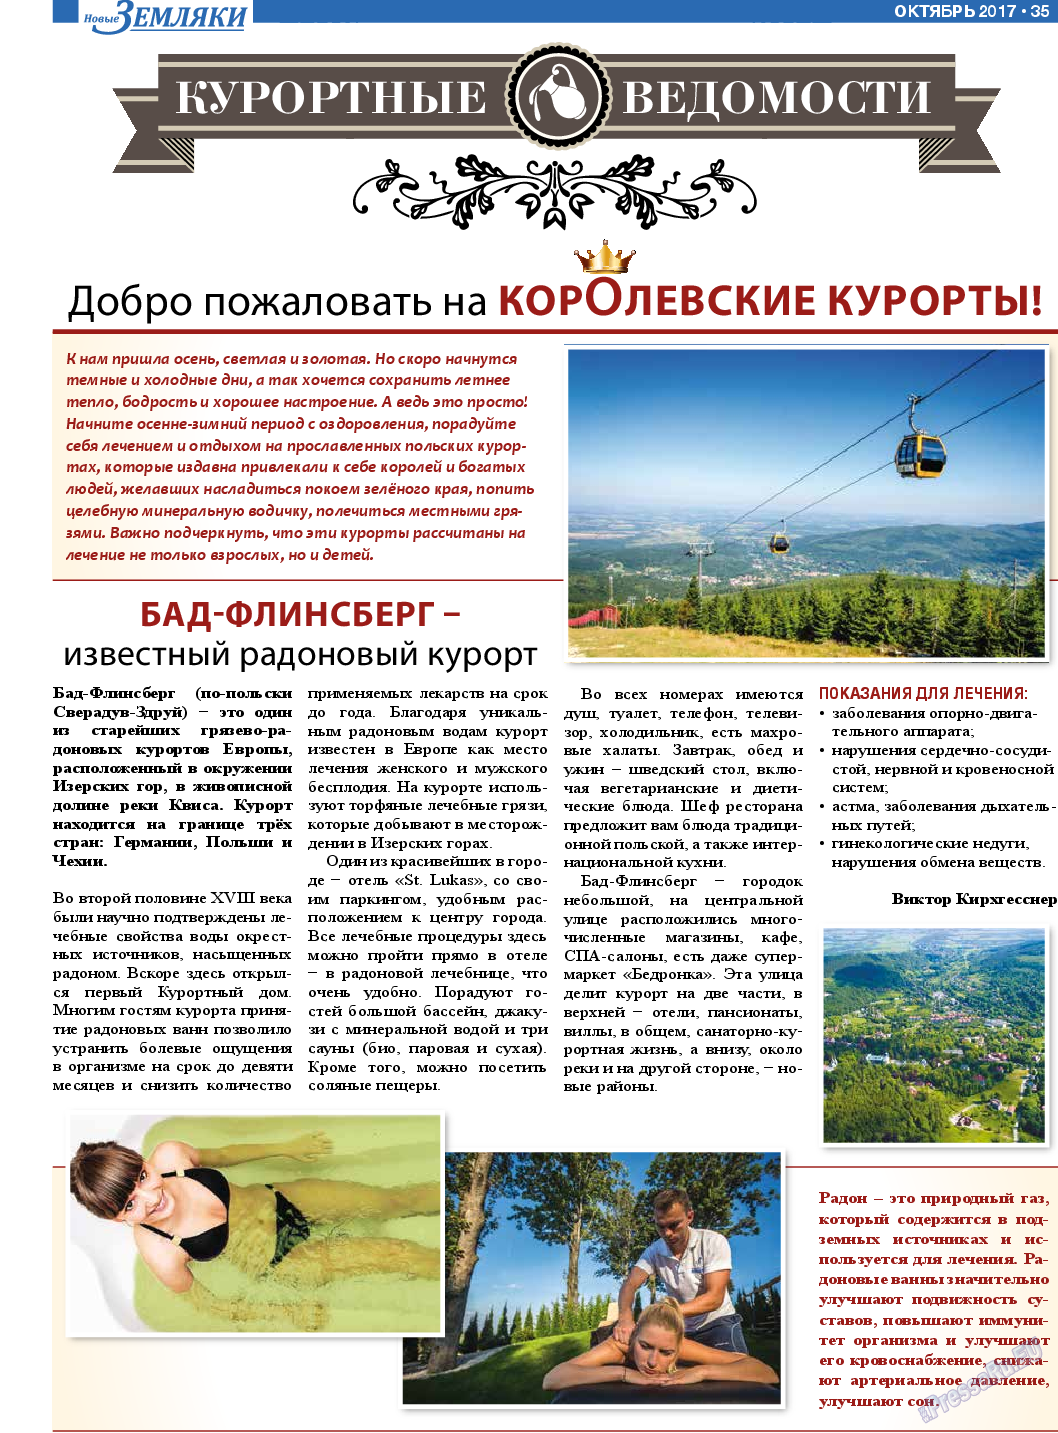 Новые Земляки (газета). 2017 год, номер 10, стр. 35